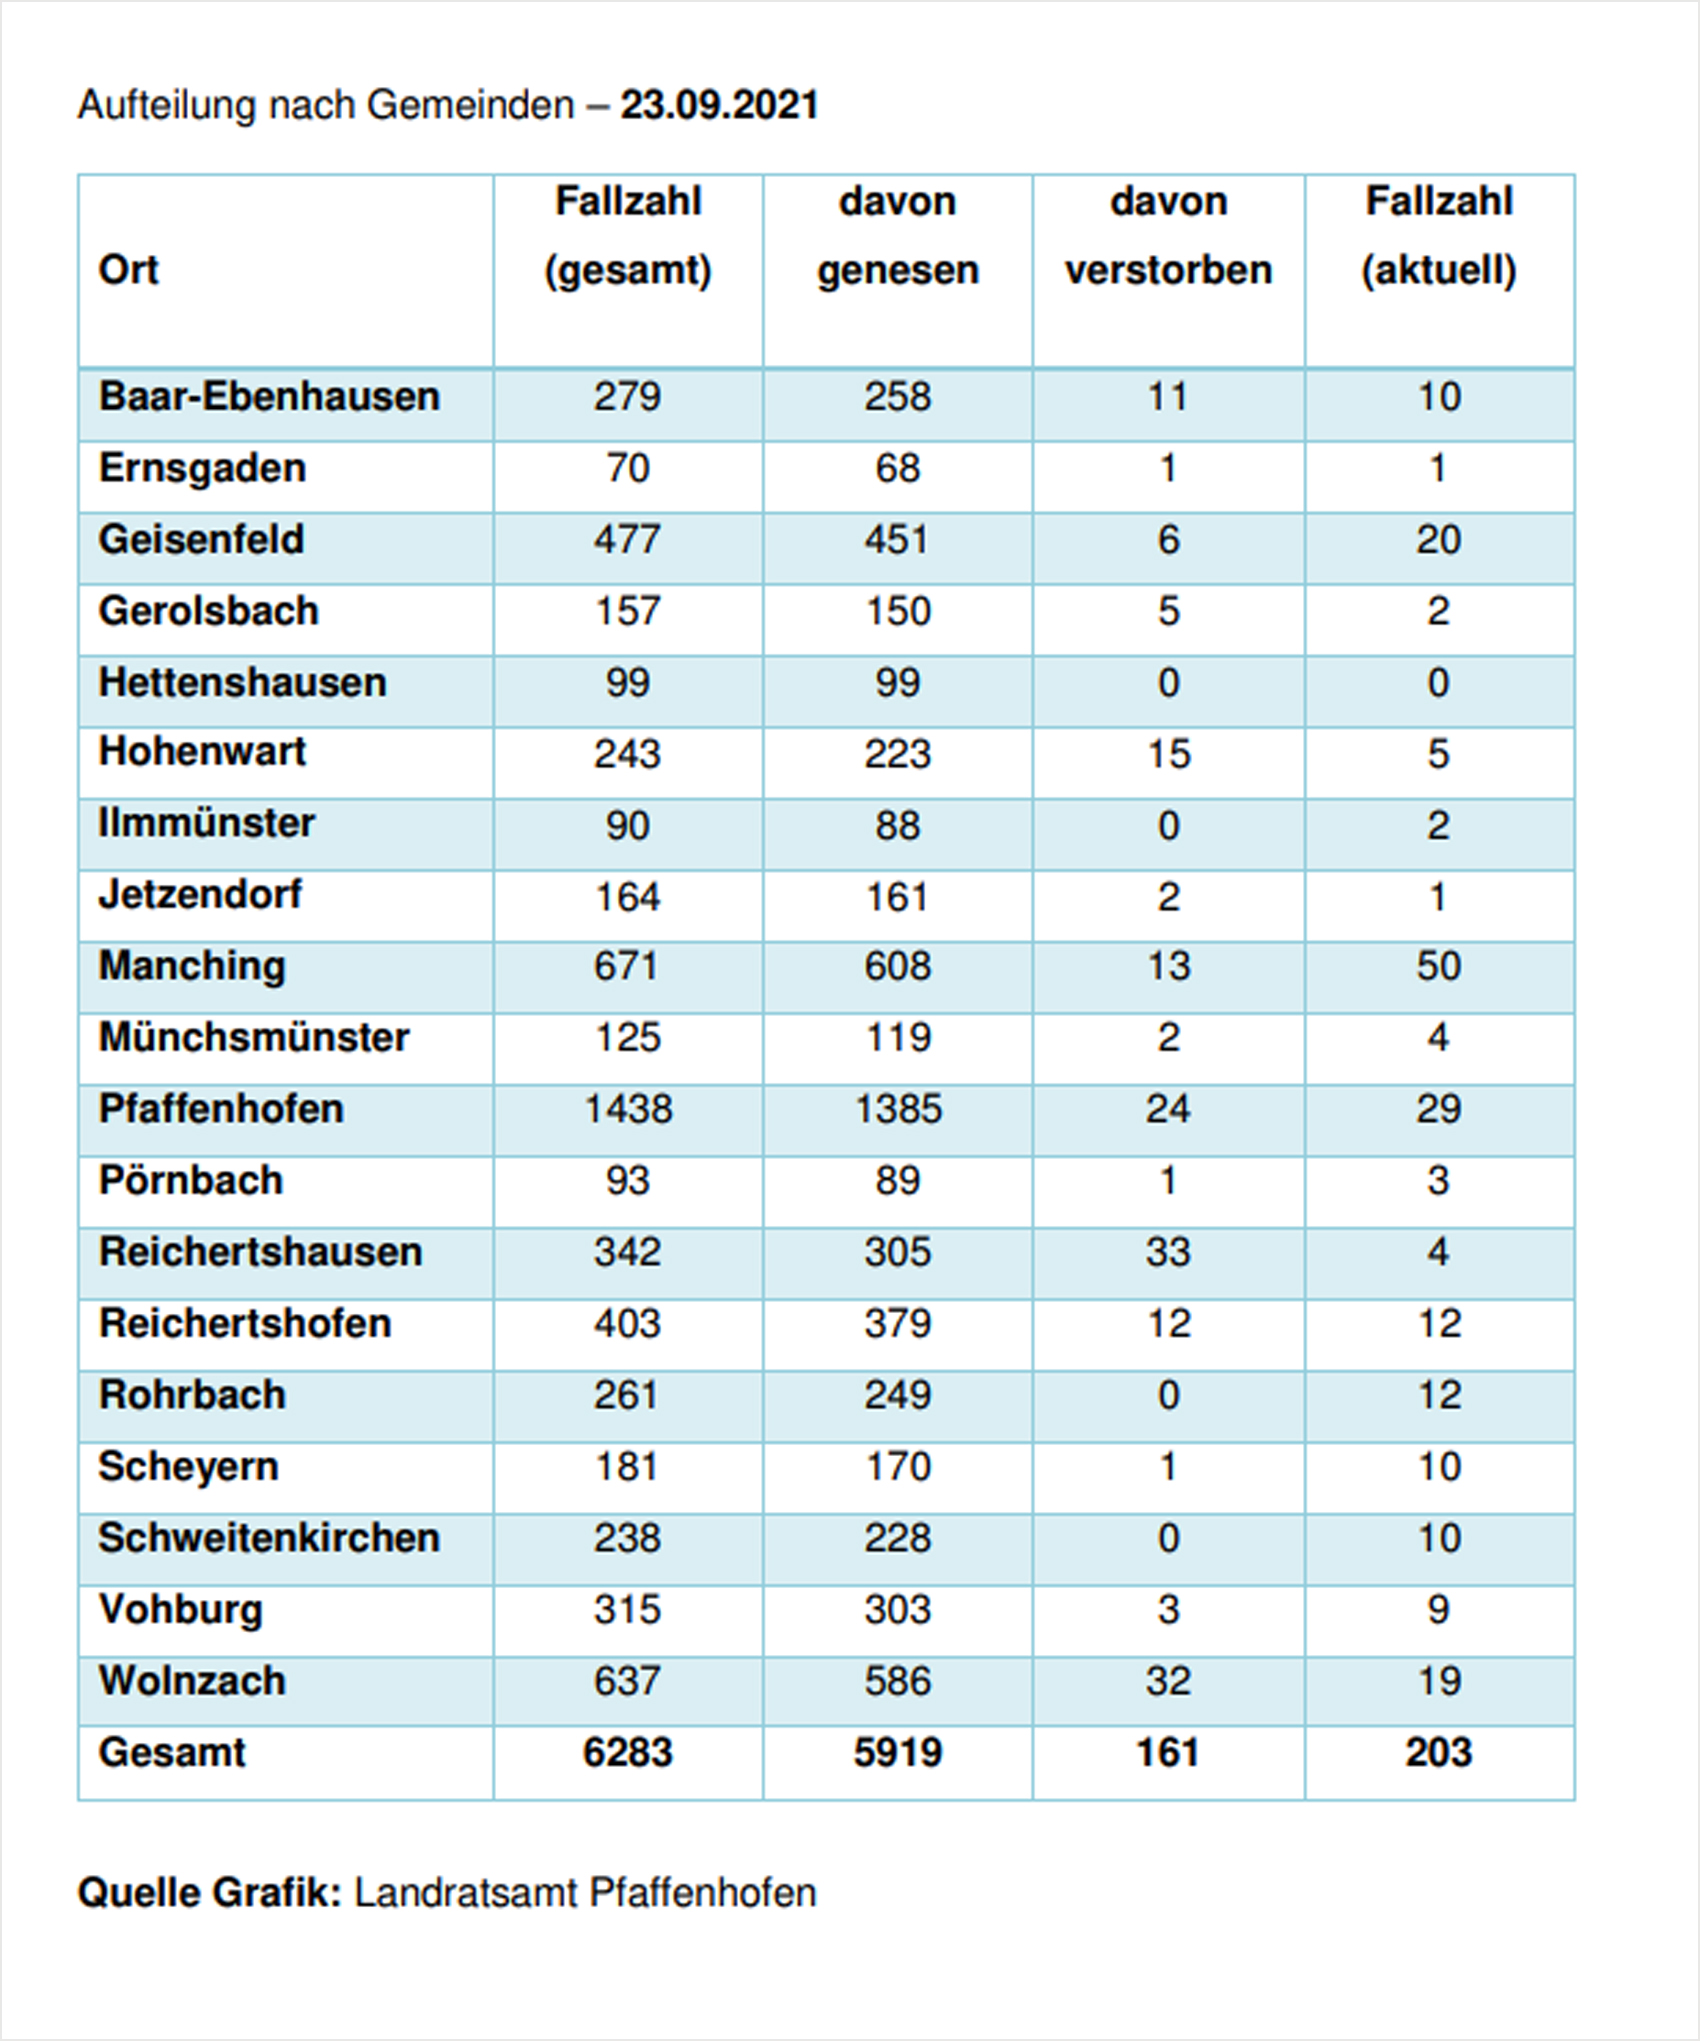 Verteilung der Fallzahlen auf die Landkreisgemeinden - 23.09.2021